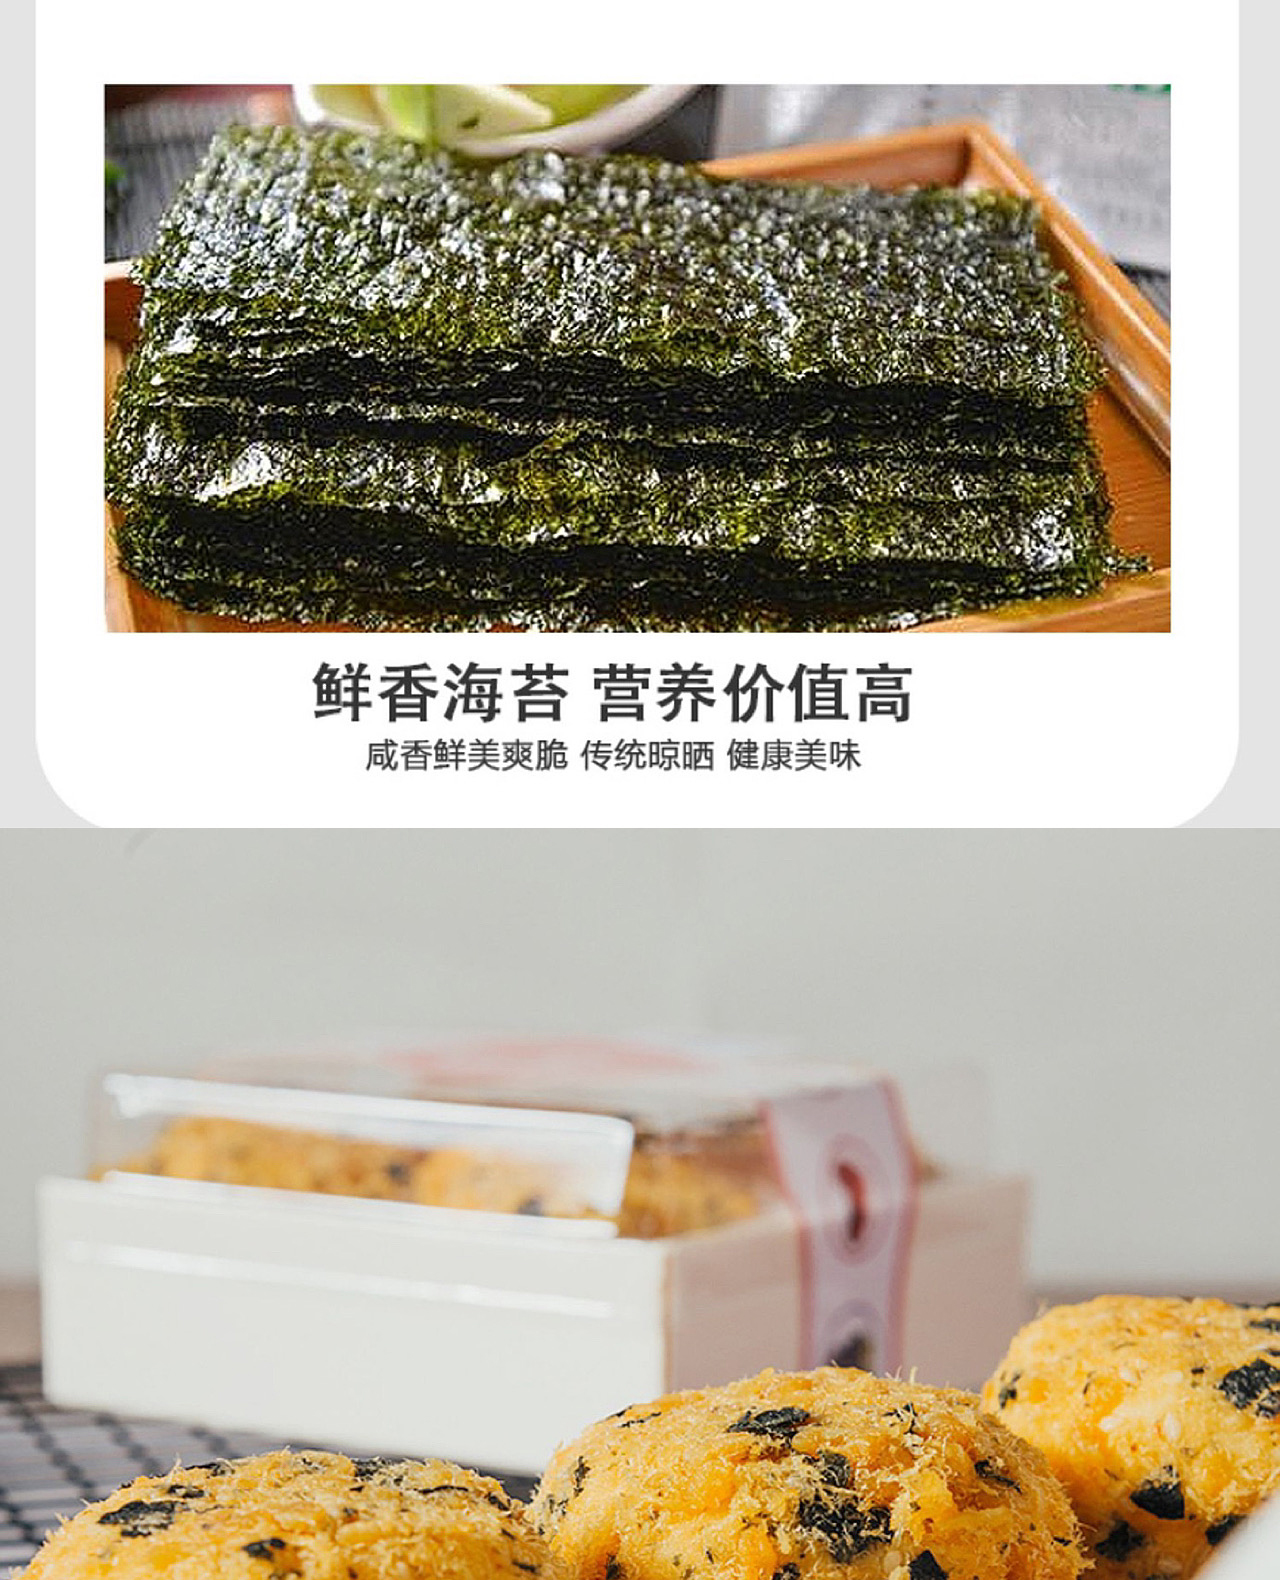 肉松小贝【2盒】海苔味肉松小贝网红沙拉酱爆浆蛋糕点零食早点拉丝包装